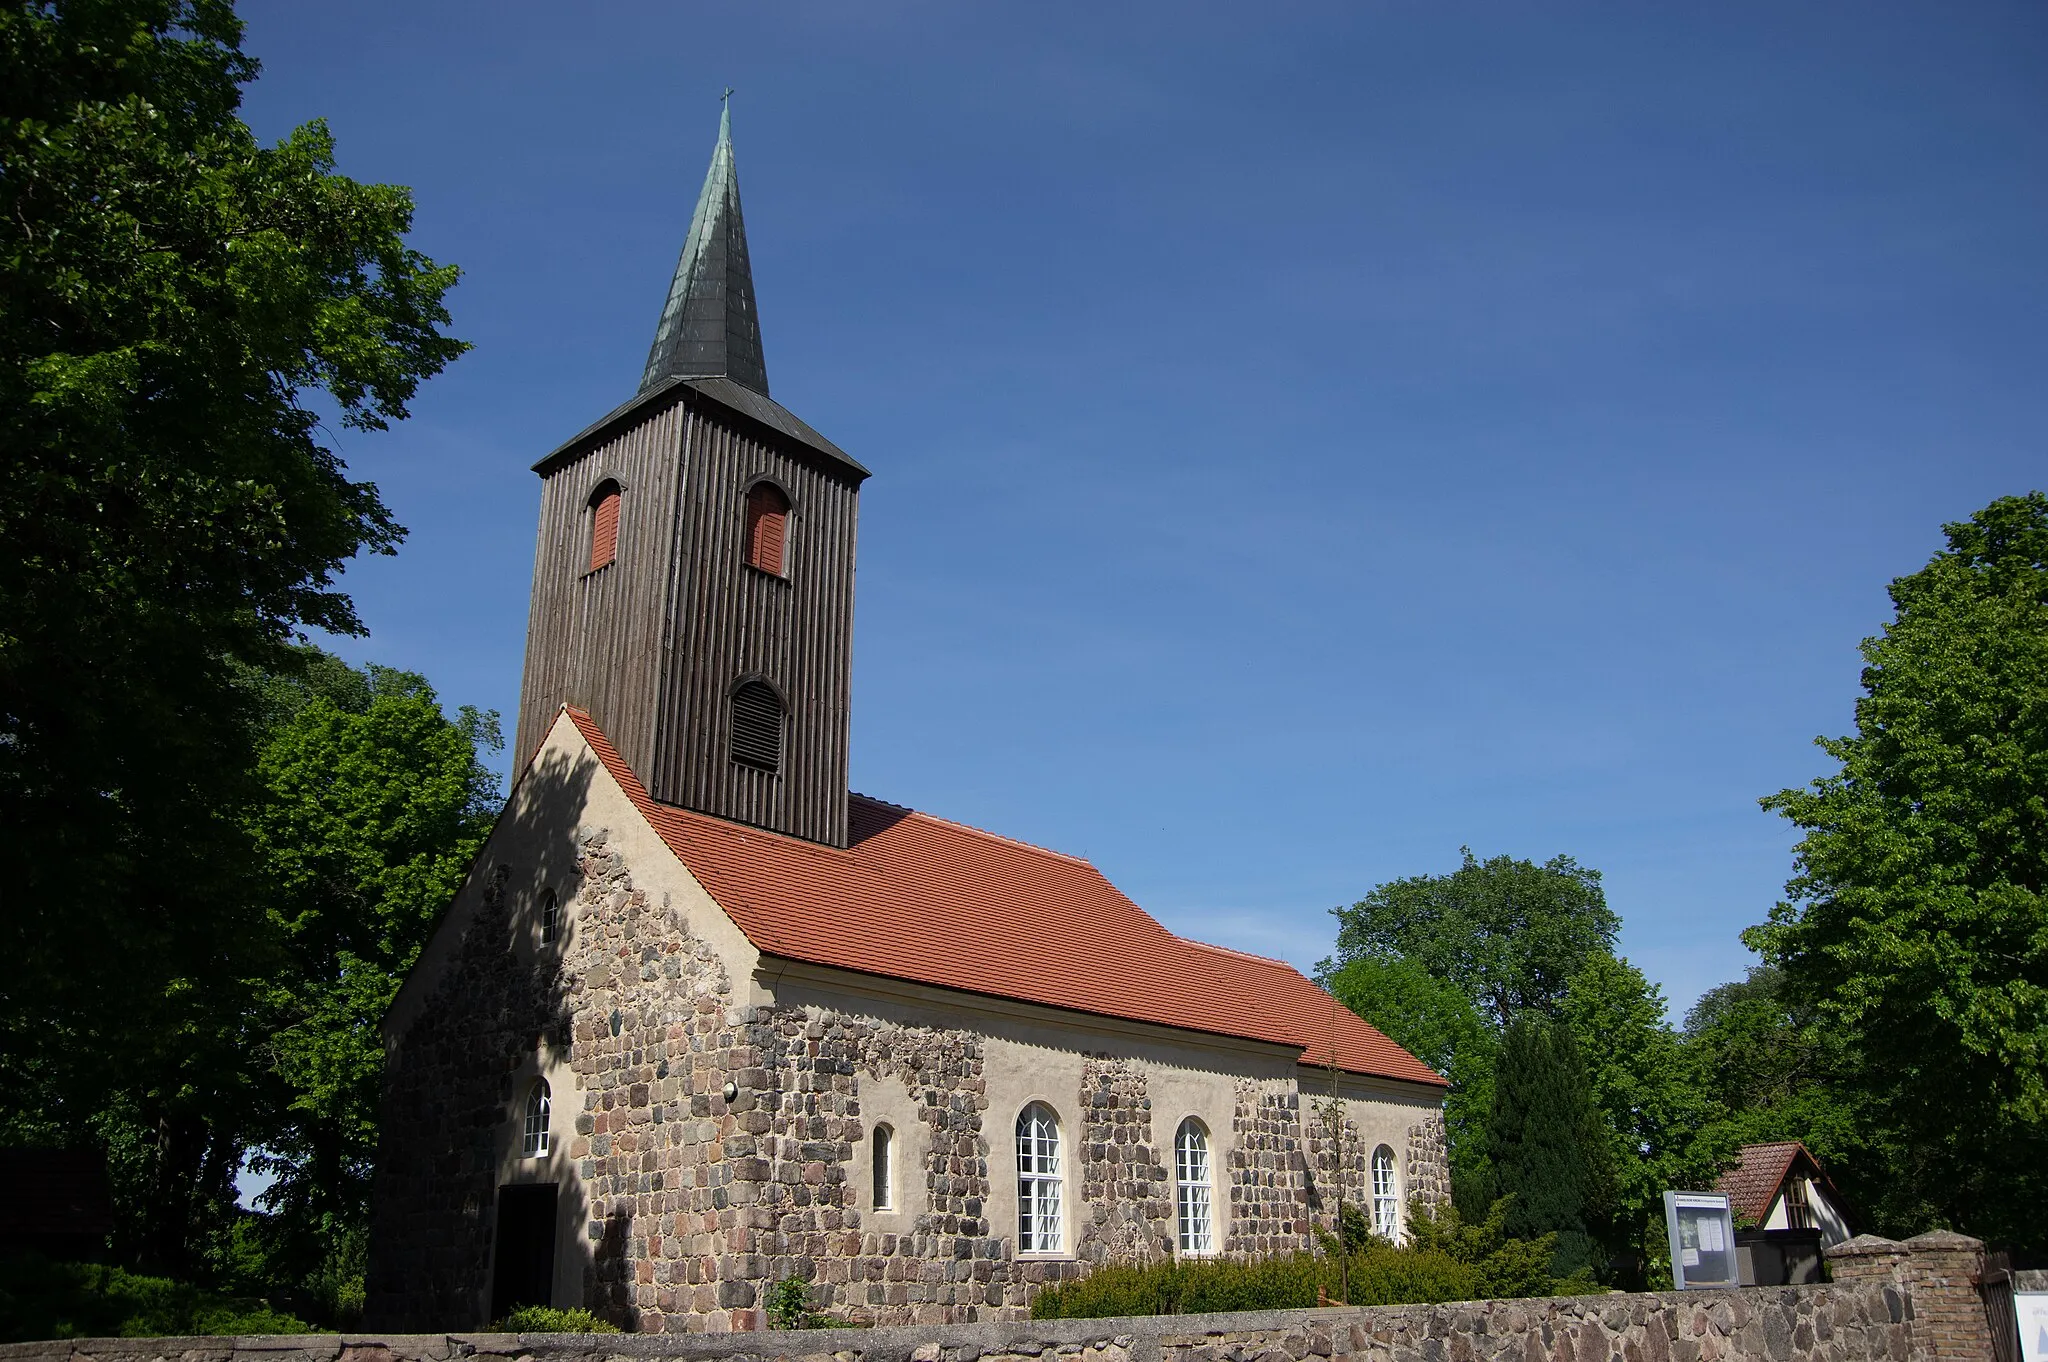 Photo showing: Sputendort ist ein Ortsteil von Stahnsdorf in Brandenburg. Die Kirche steht unter Denkmalschutz.